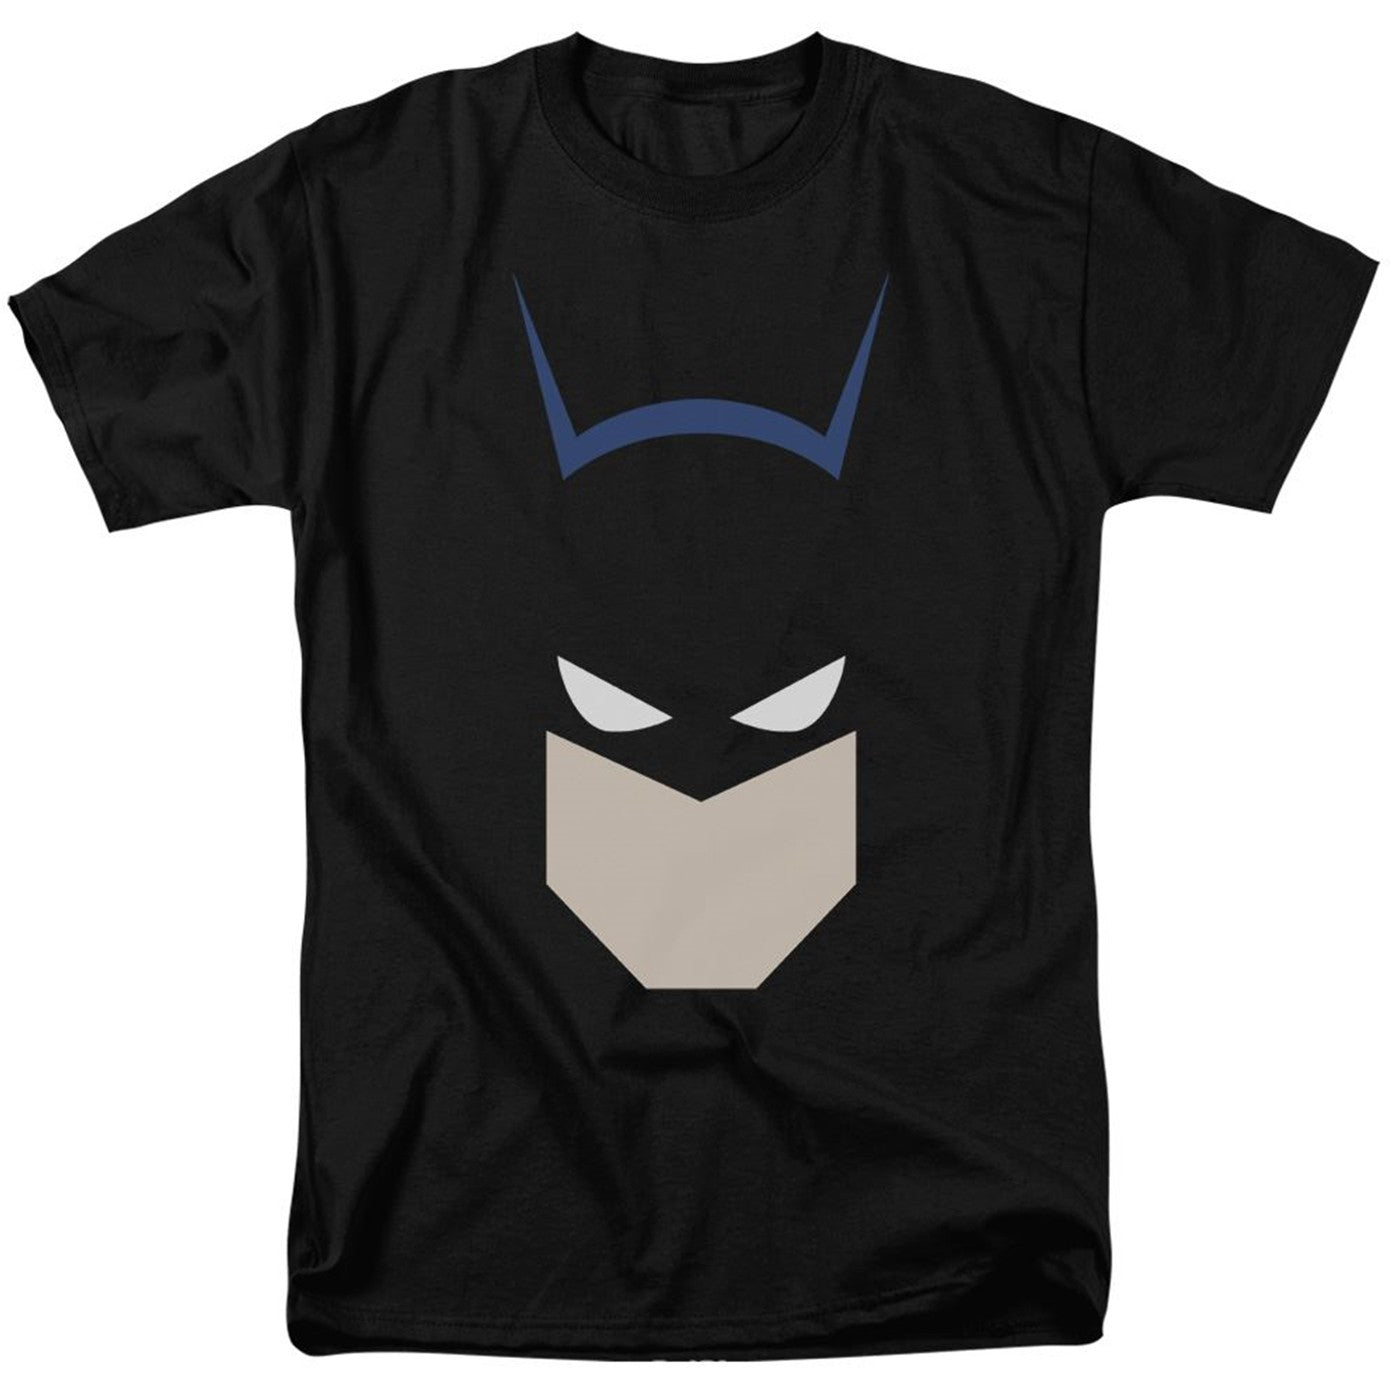 Bat Head Batman Men's T-Shirt